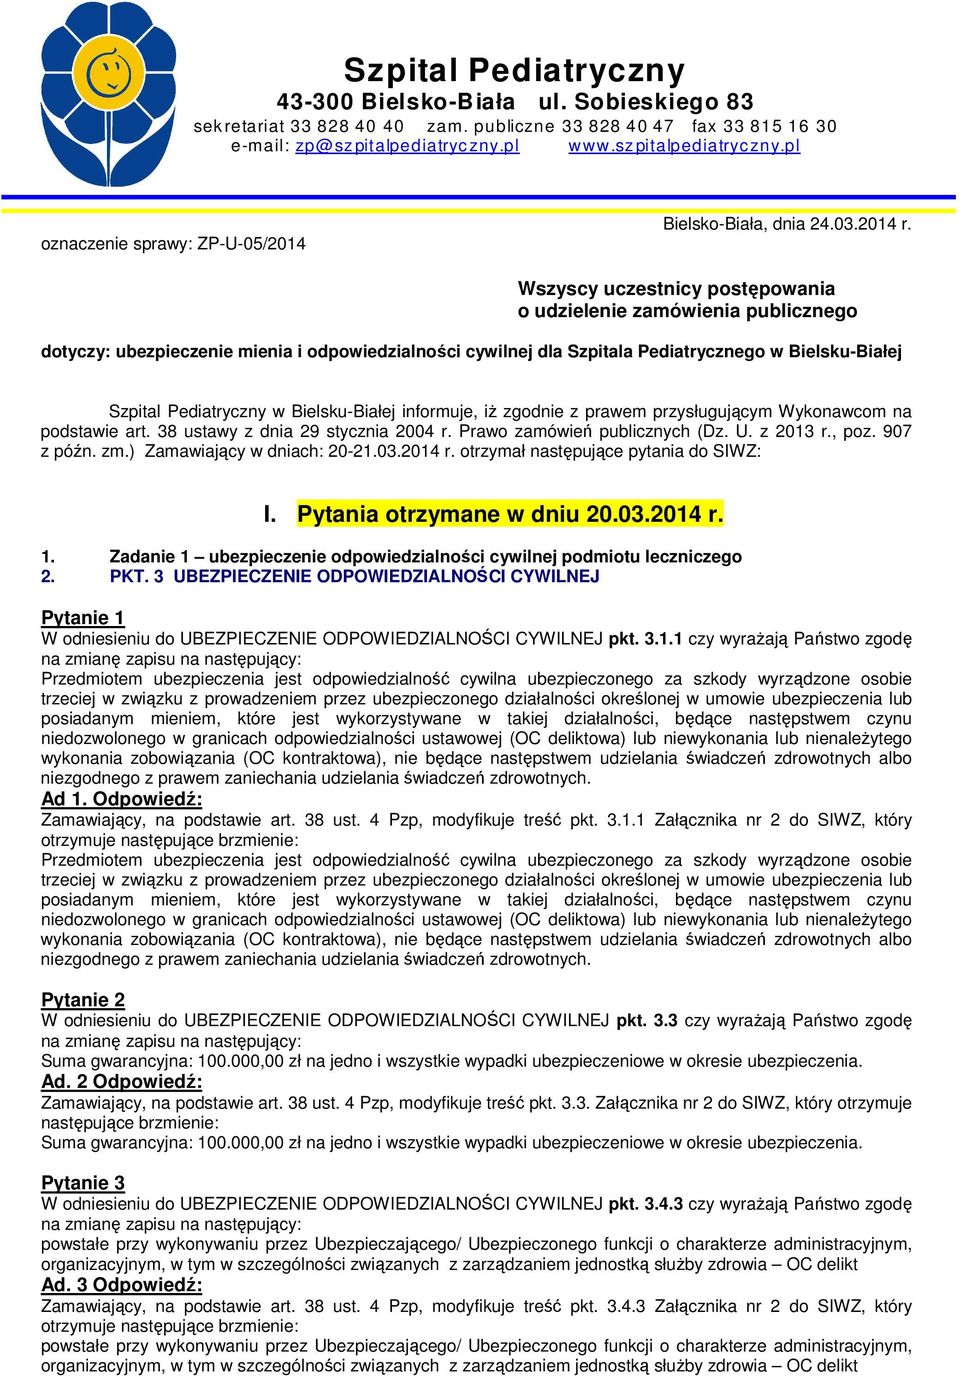 Wszyscy uczestnicy postępowania o udzielenie zamówienia publicznego dotyczy: ubezpieczenie mienia i odpowiedzialności cywilnej dla Szpitala Pediatrycznego w Bielsku-Białej Szpital Pediatryczny w